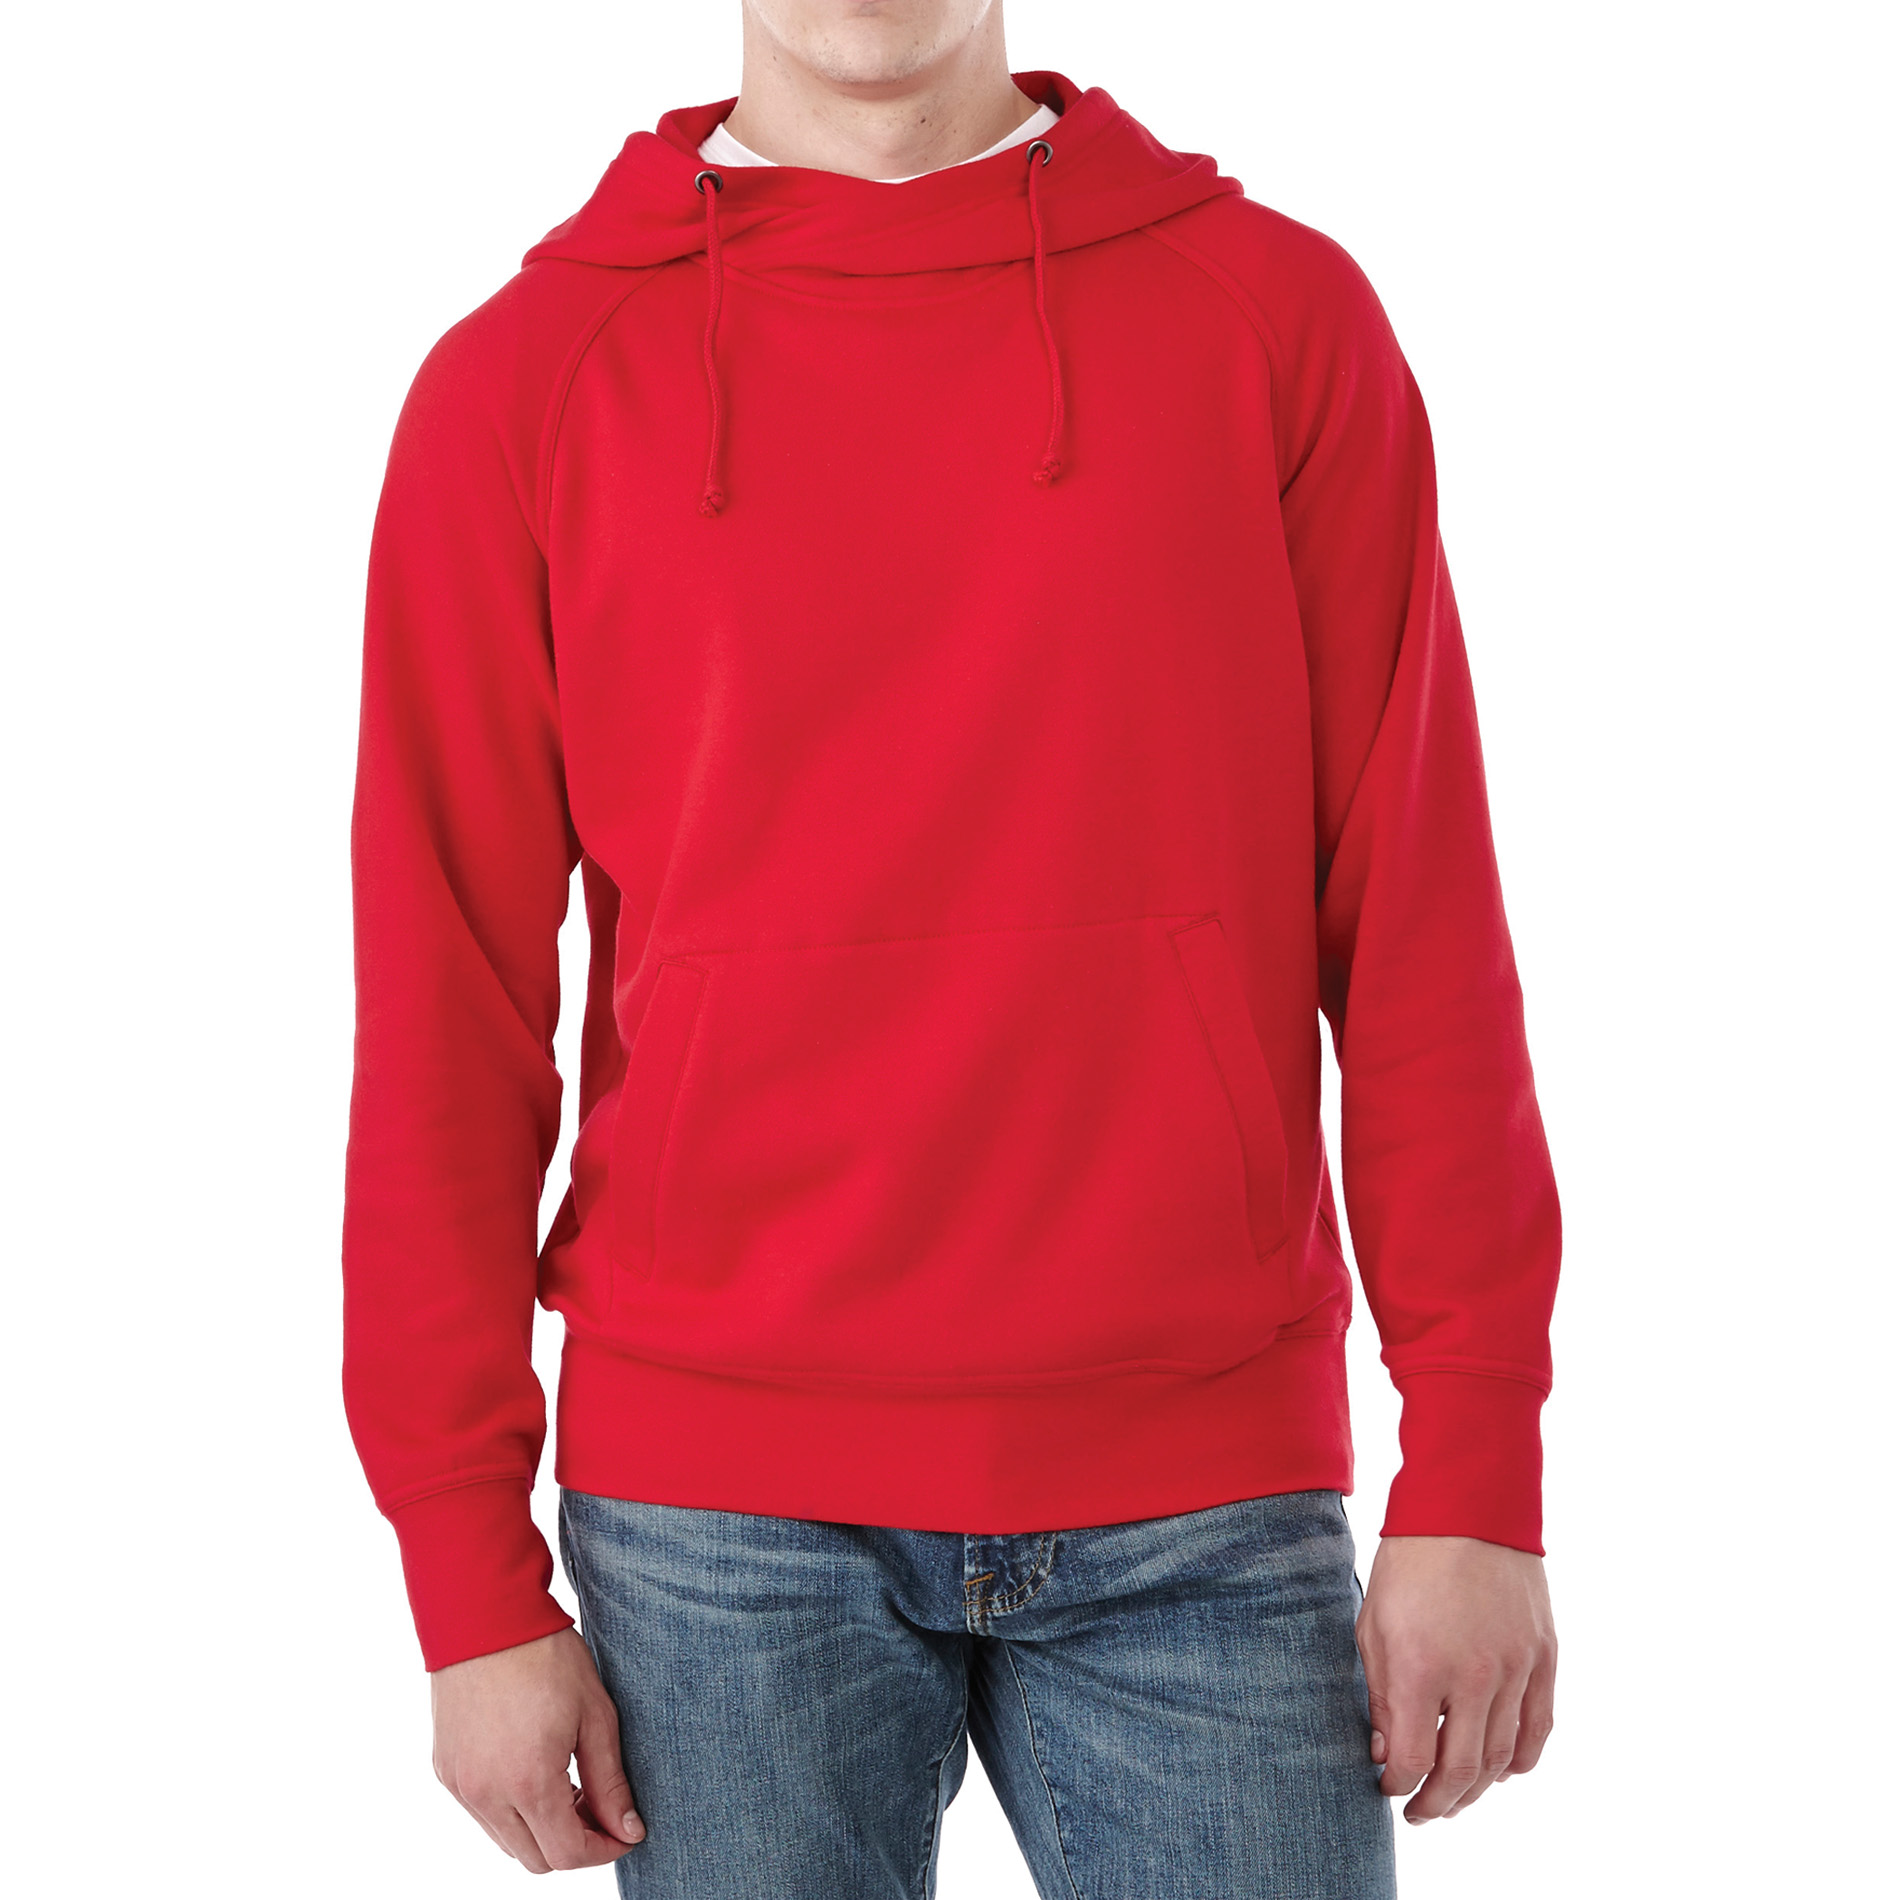 Trimark TM18209 - Men's DAYTON Fleece Hoodie $23.40 - Sweatshirts